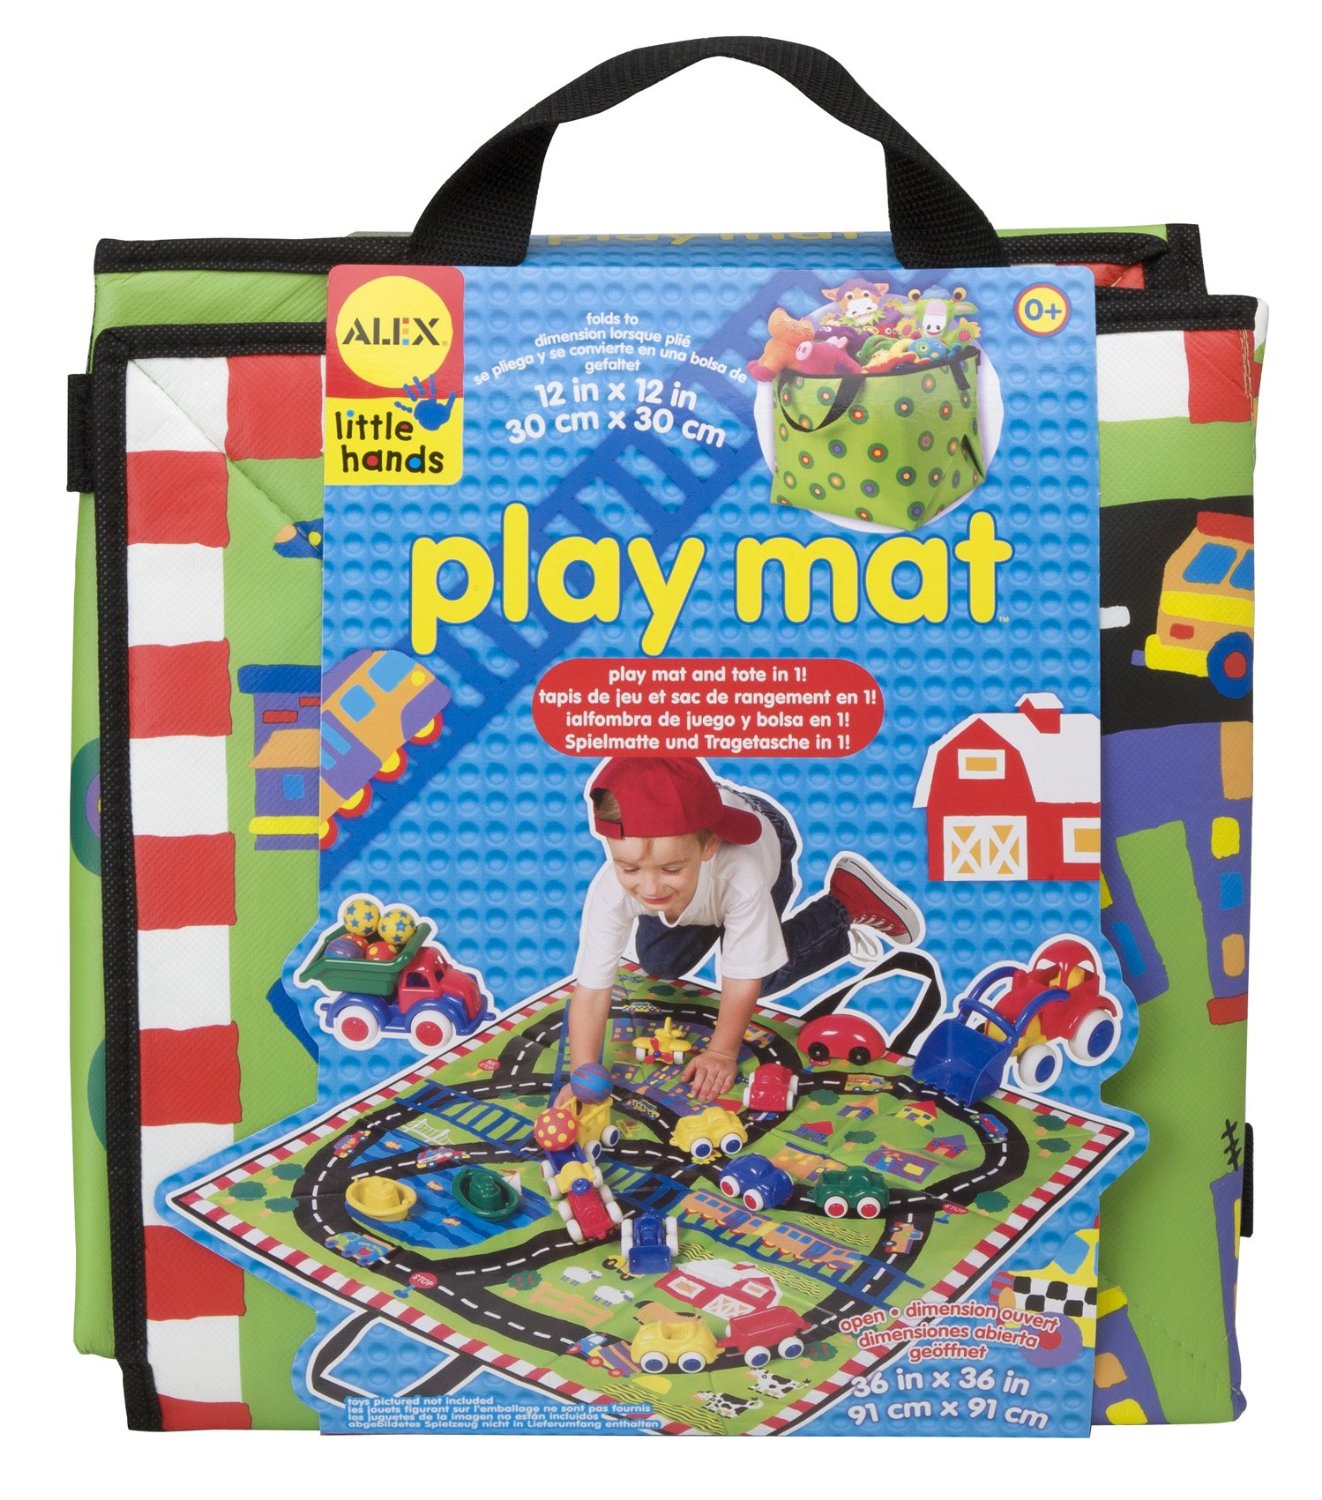 HURRY! ALEX Toys Little Hands Play Mat – Just $9.35!